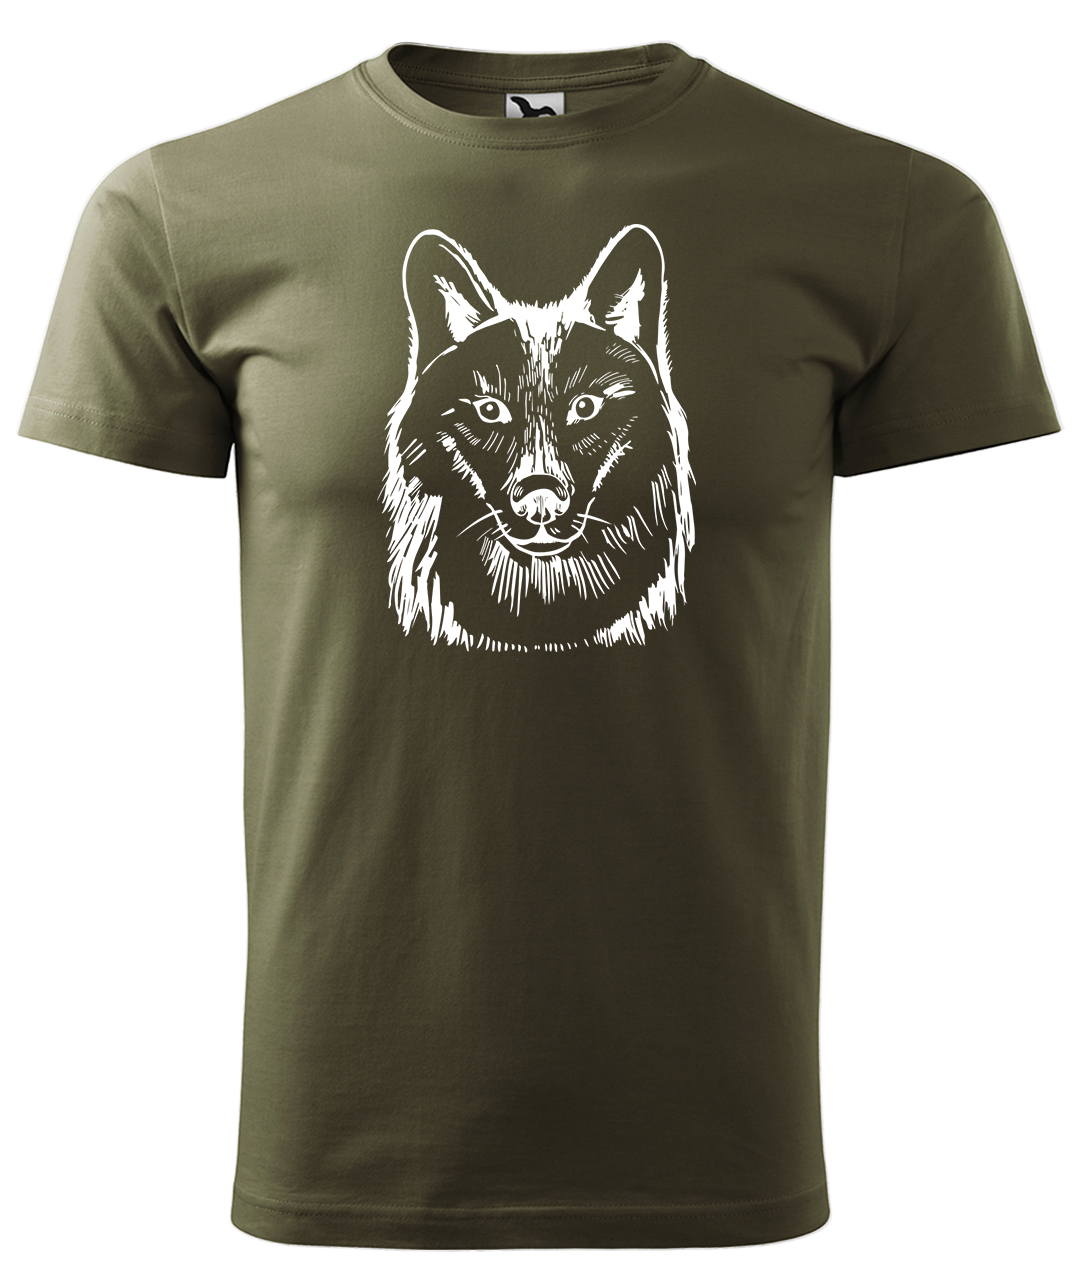 Dětské tričko s vlkem - Kresba vlka Velikost: 8 let / 134 cm, Barva: Military (69), Délka rukávu: Krátký rukáv